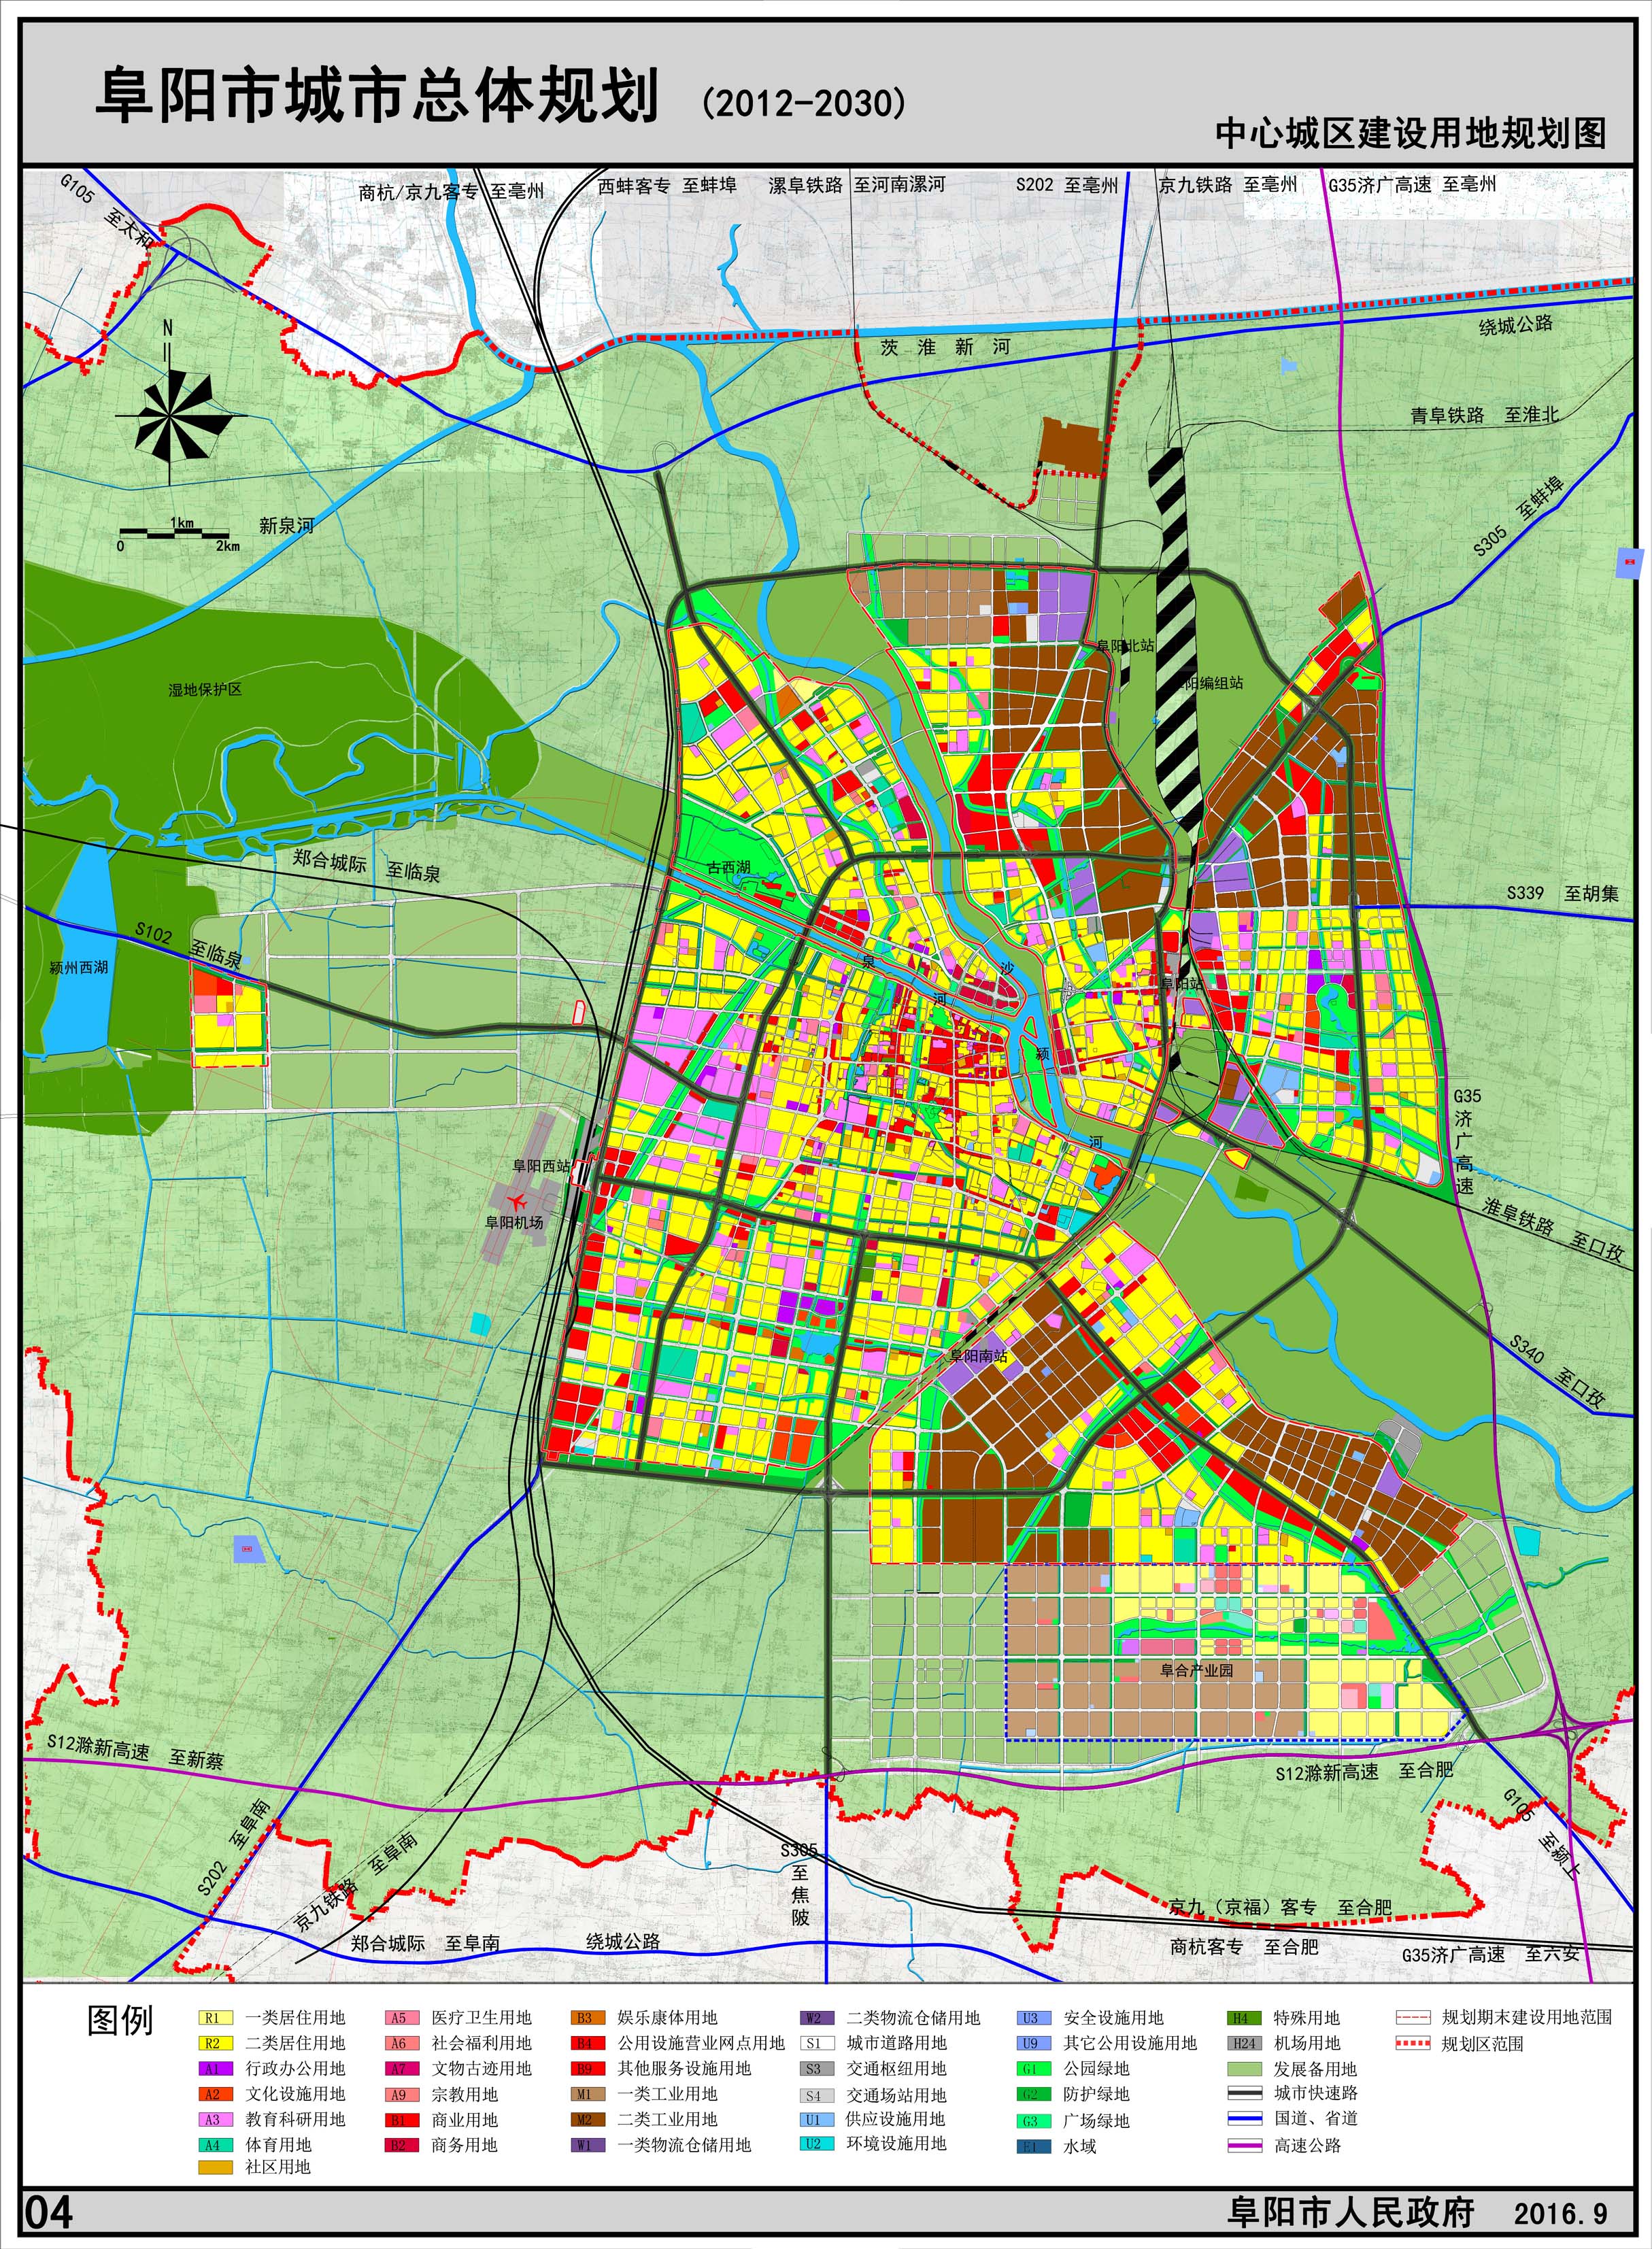 阜阳市城市总体规划(2012—2030年)